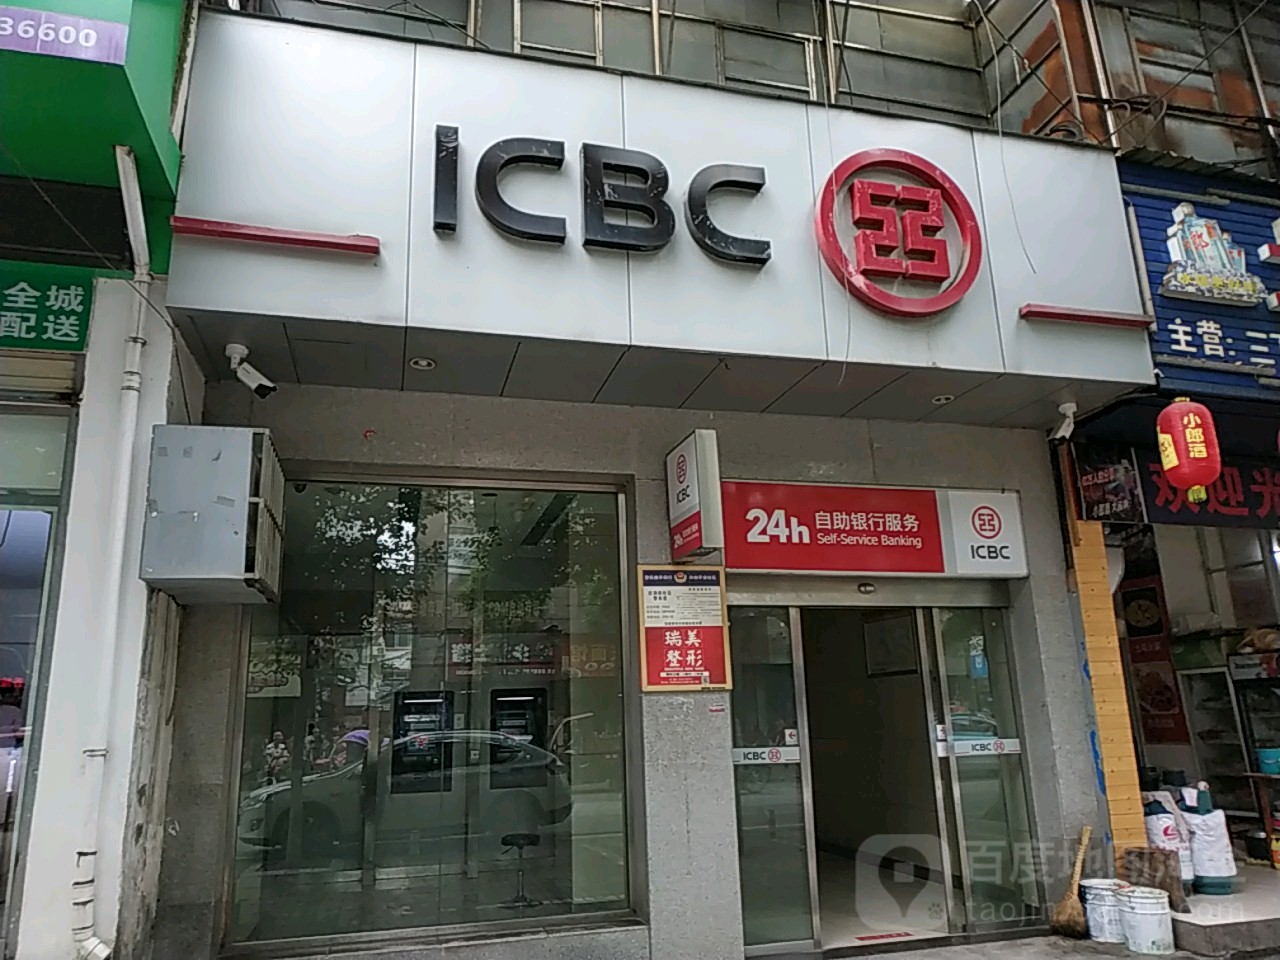 中國工商銀行24小時自助銀行服務(后溶街支行)